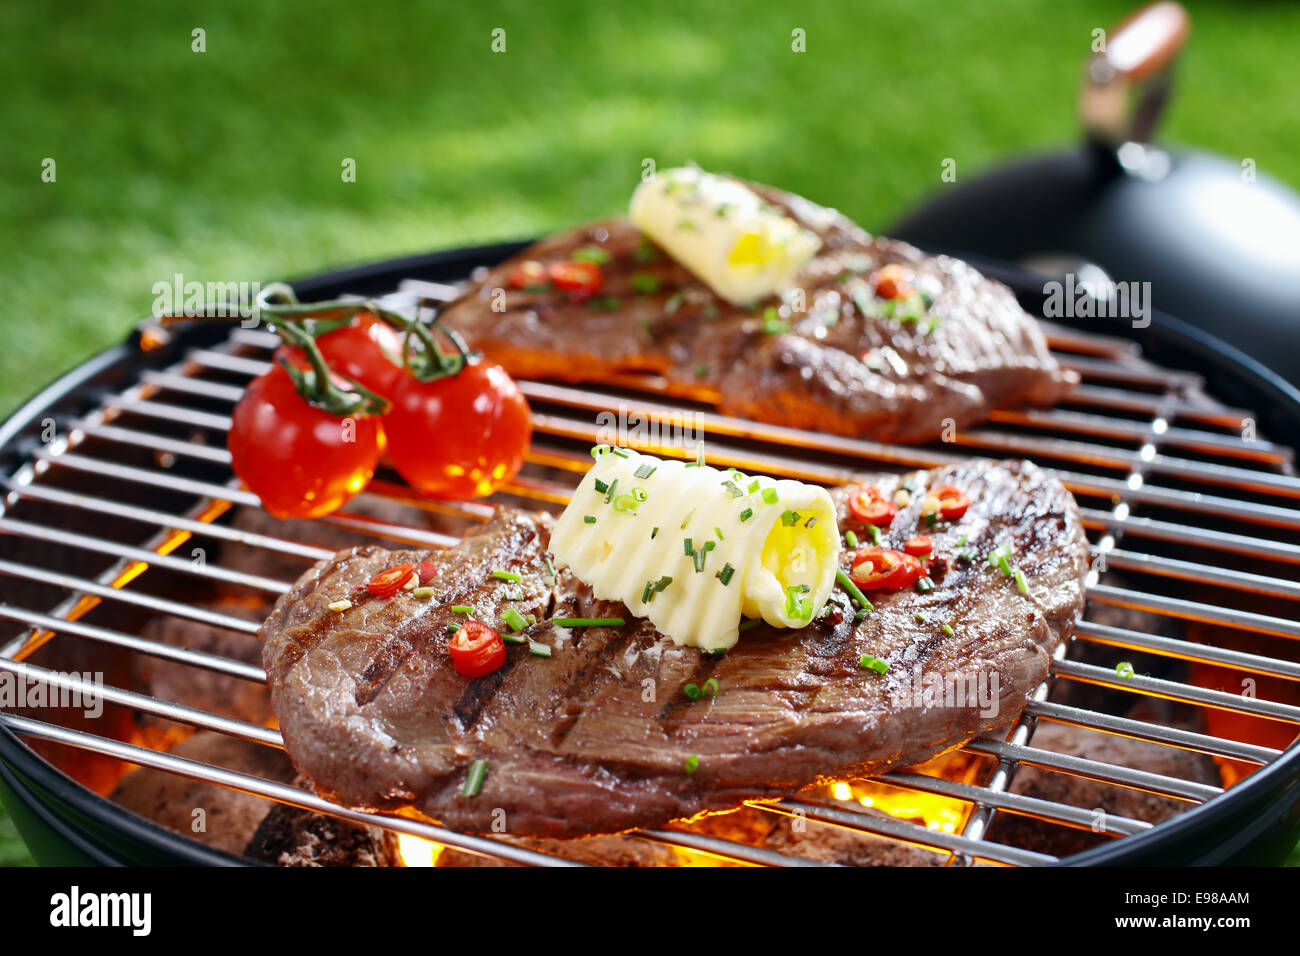 Partie de succulent steak maigre surmonté avec le beurre et les herbes grillées sur une grille sur des charbons ardents dans un barbecue Banque D'Images